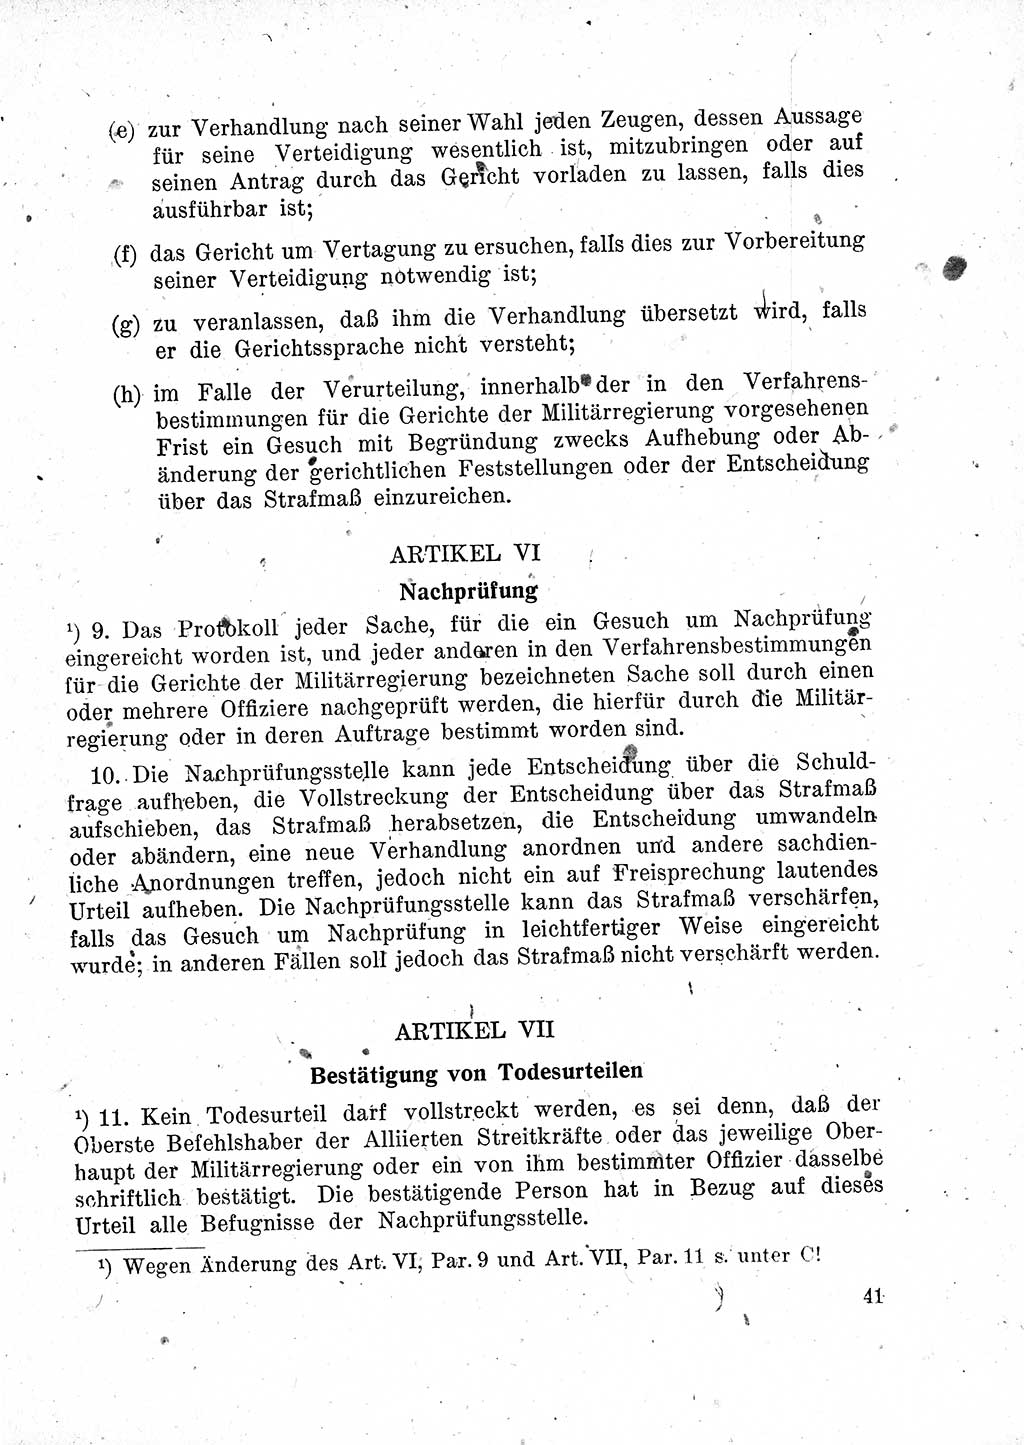 Das Recht der Besatzungsmacht (Deutschland), Proklamationen, Deklerationen, Verordnungen, Gesetze und Bekanntmachungen 1947, Seite 41 (R. Bes. Dtl. 1947, S. 41)